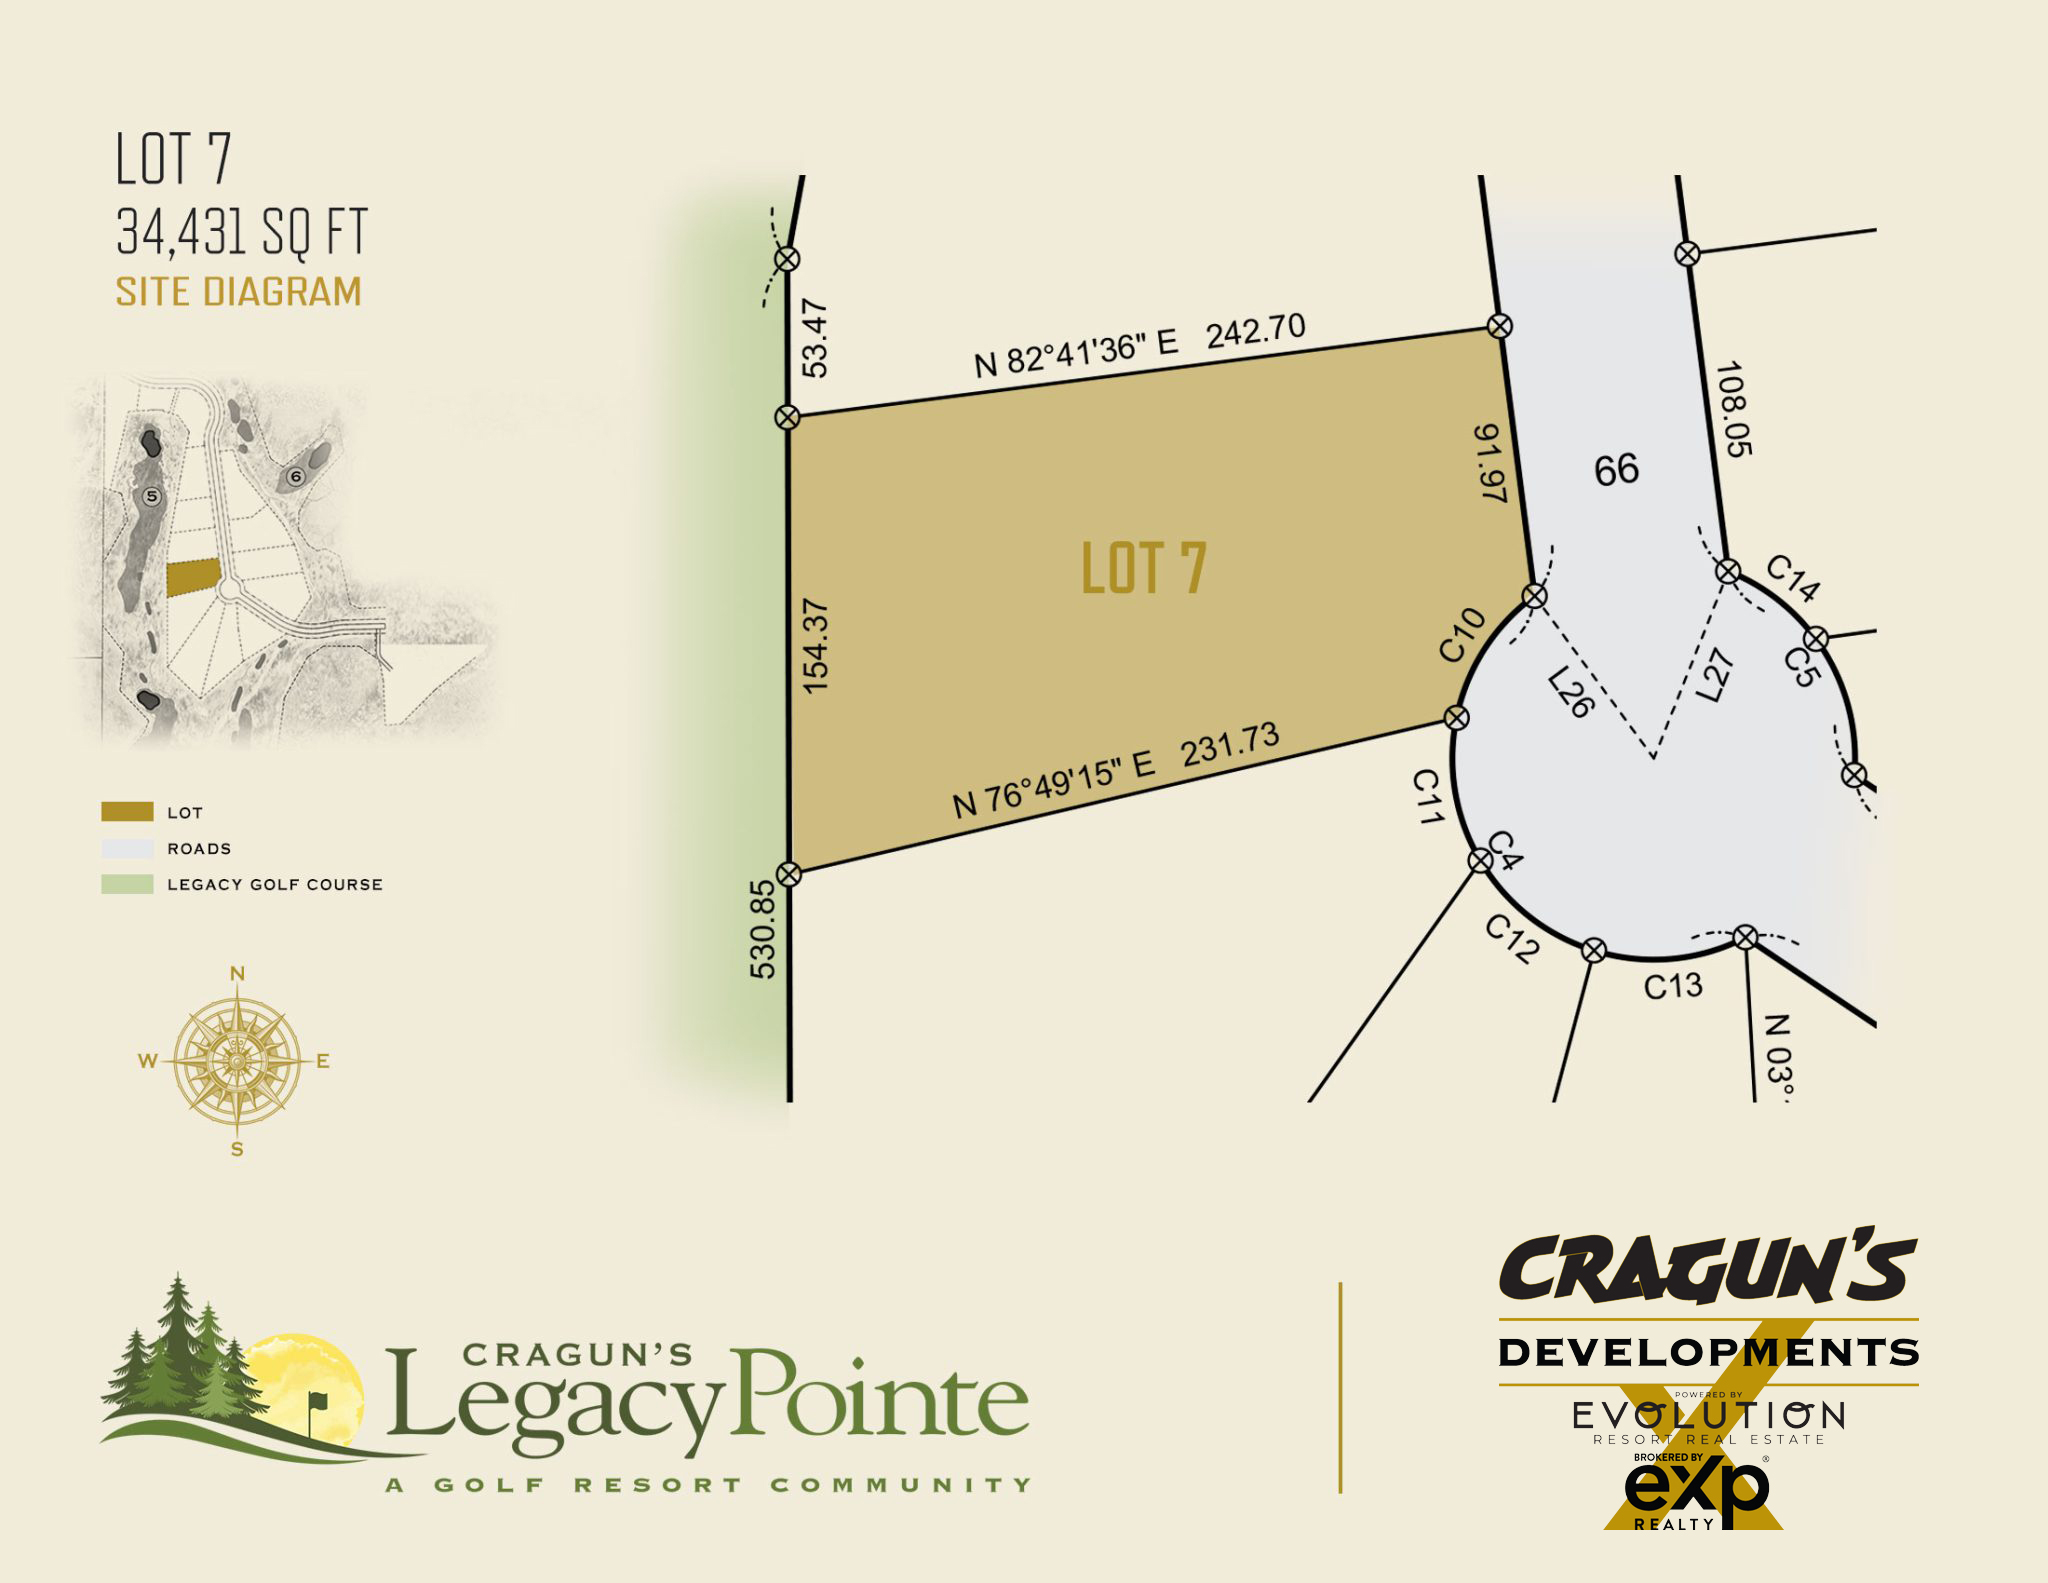 Legacy Pointe Lot 7 at Cragun's Developments in Brainerd, MN